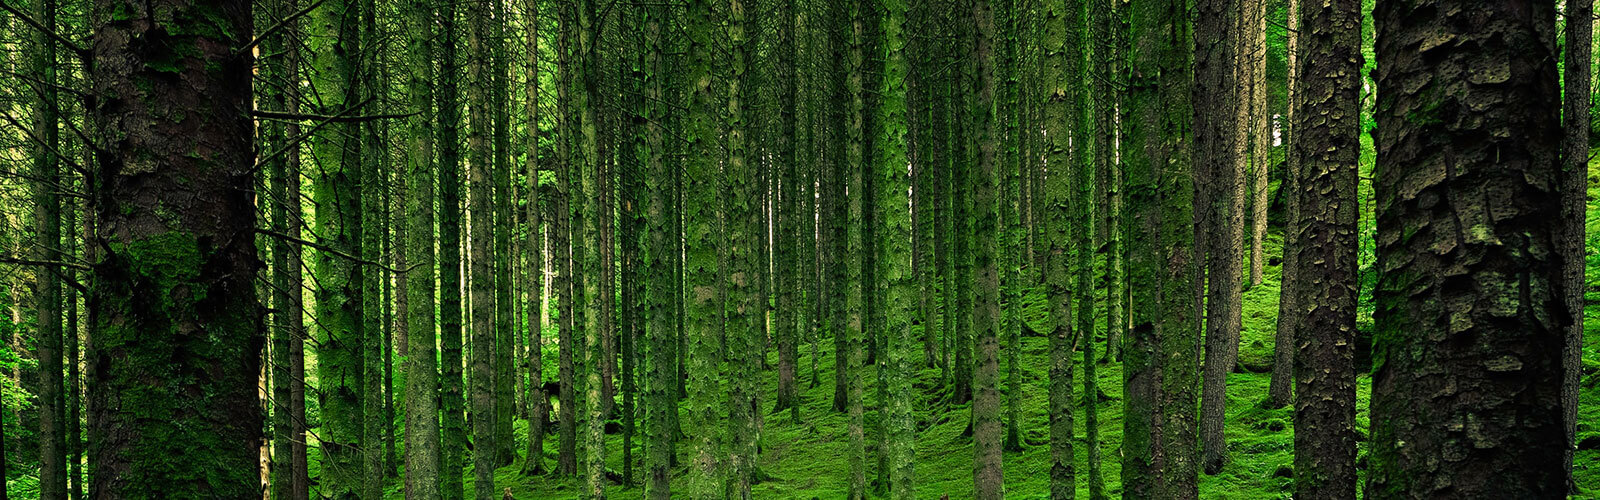 Wald Bäume